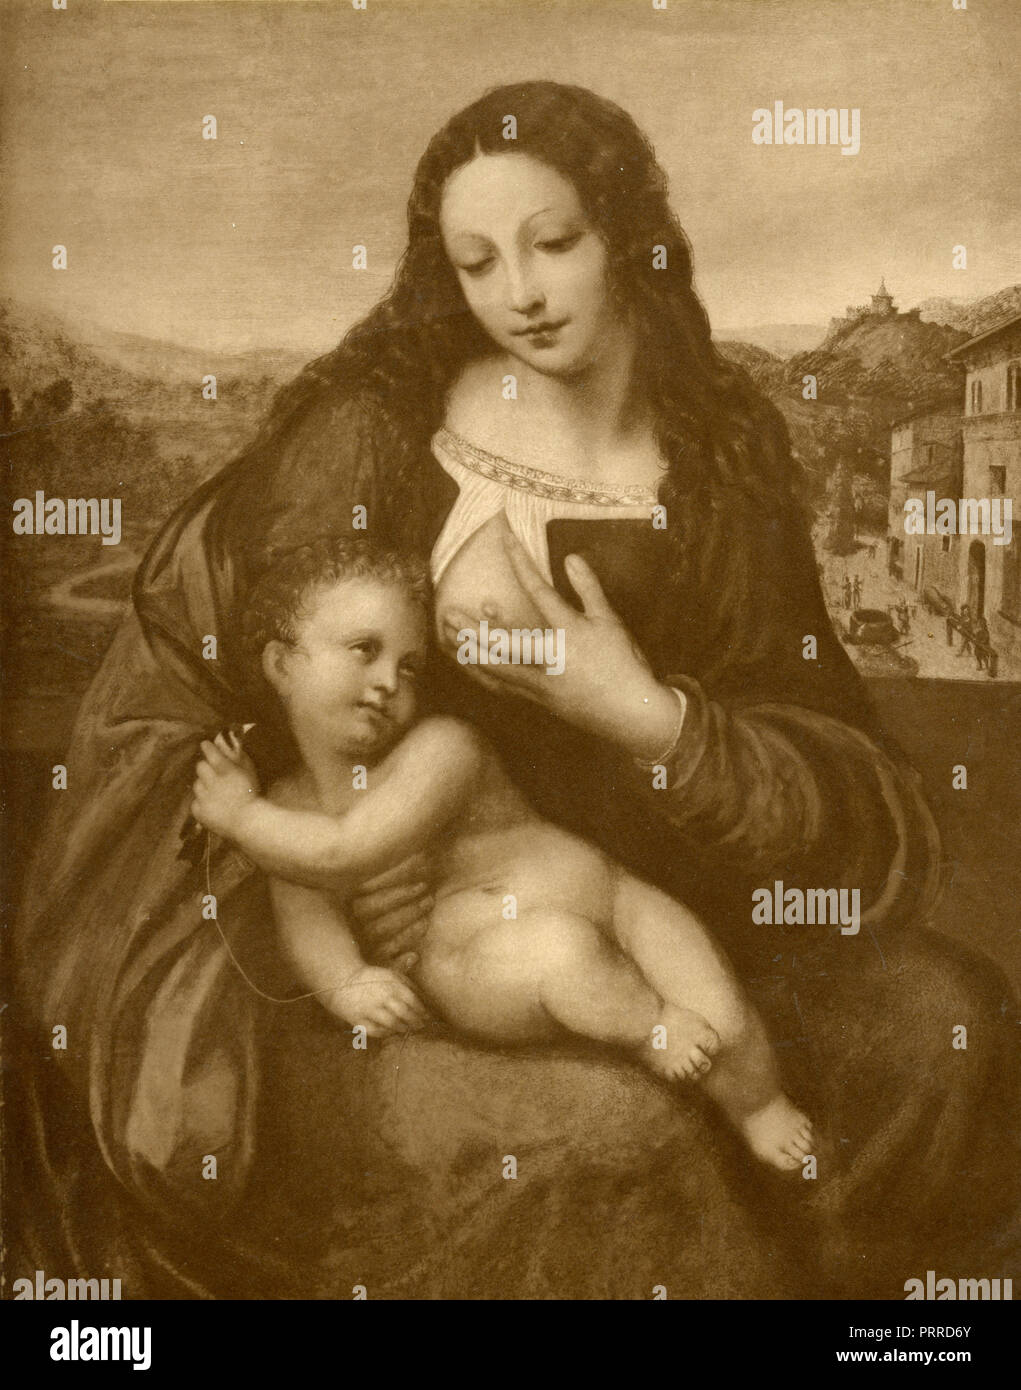 Vierge à l'enfant Jésus, la peinture par Giampedrini, 1910 Banque D'Images